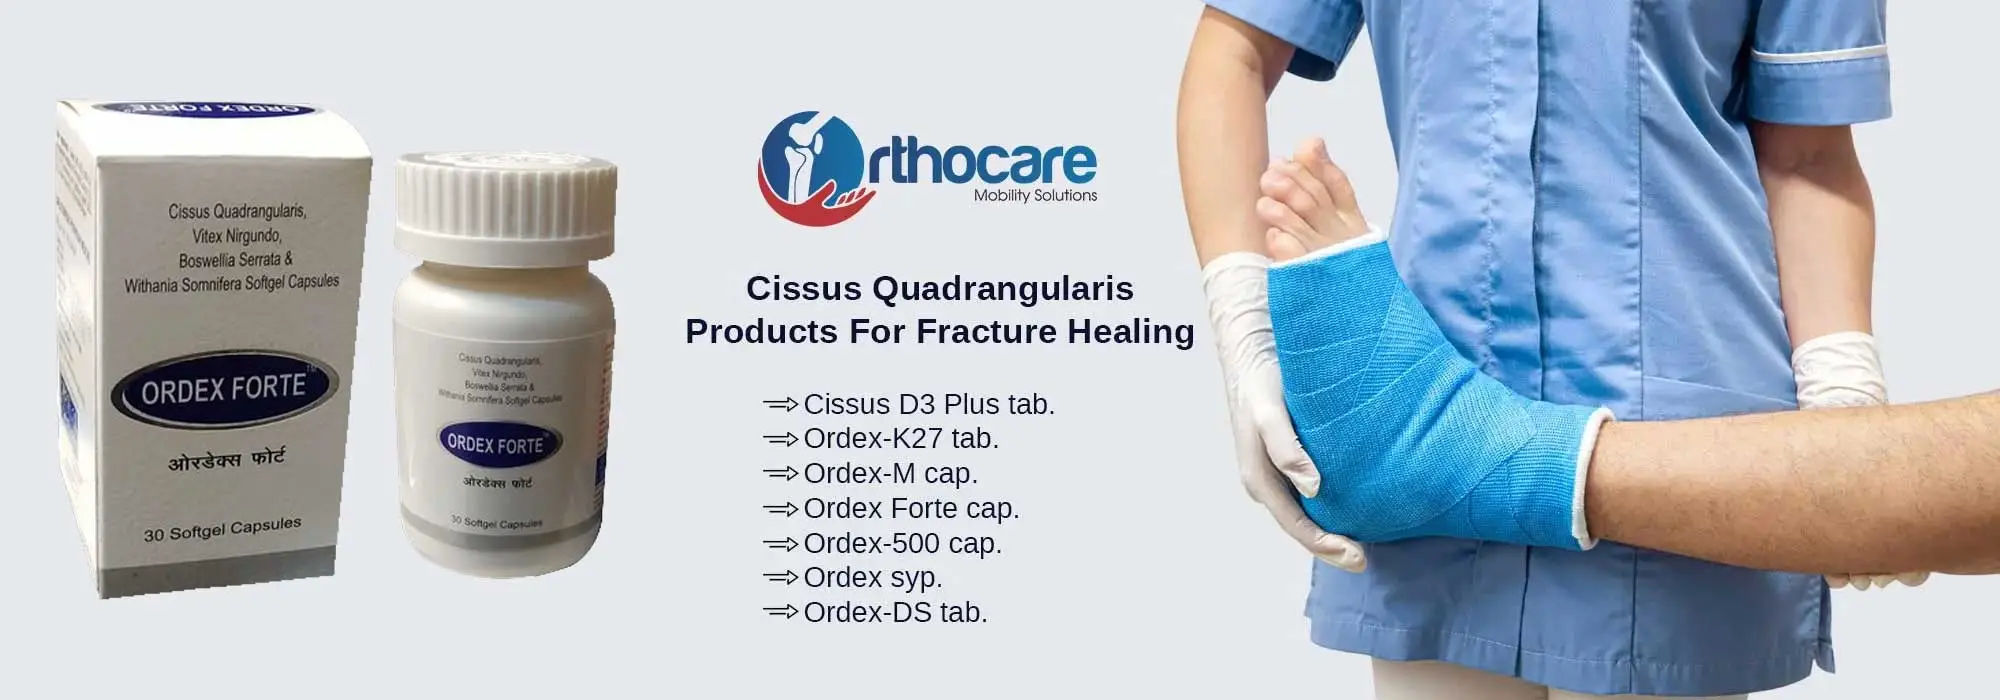 Cissus Quadrangularis Products For Fracture Healing Suppliers in Tiruvannamalai